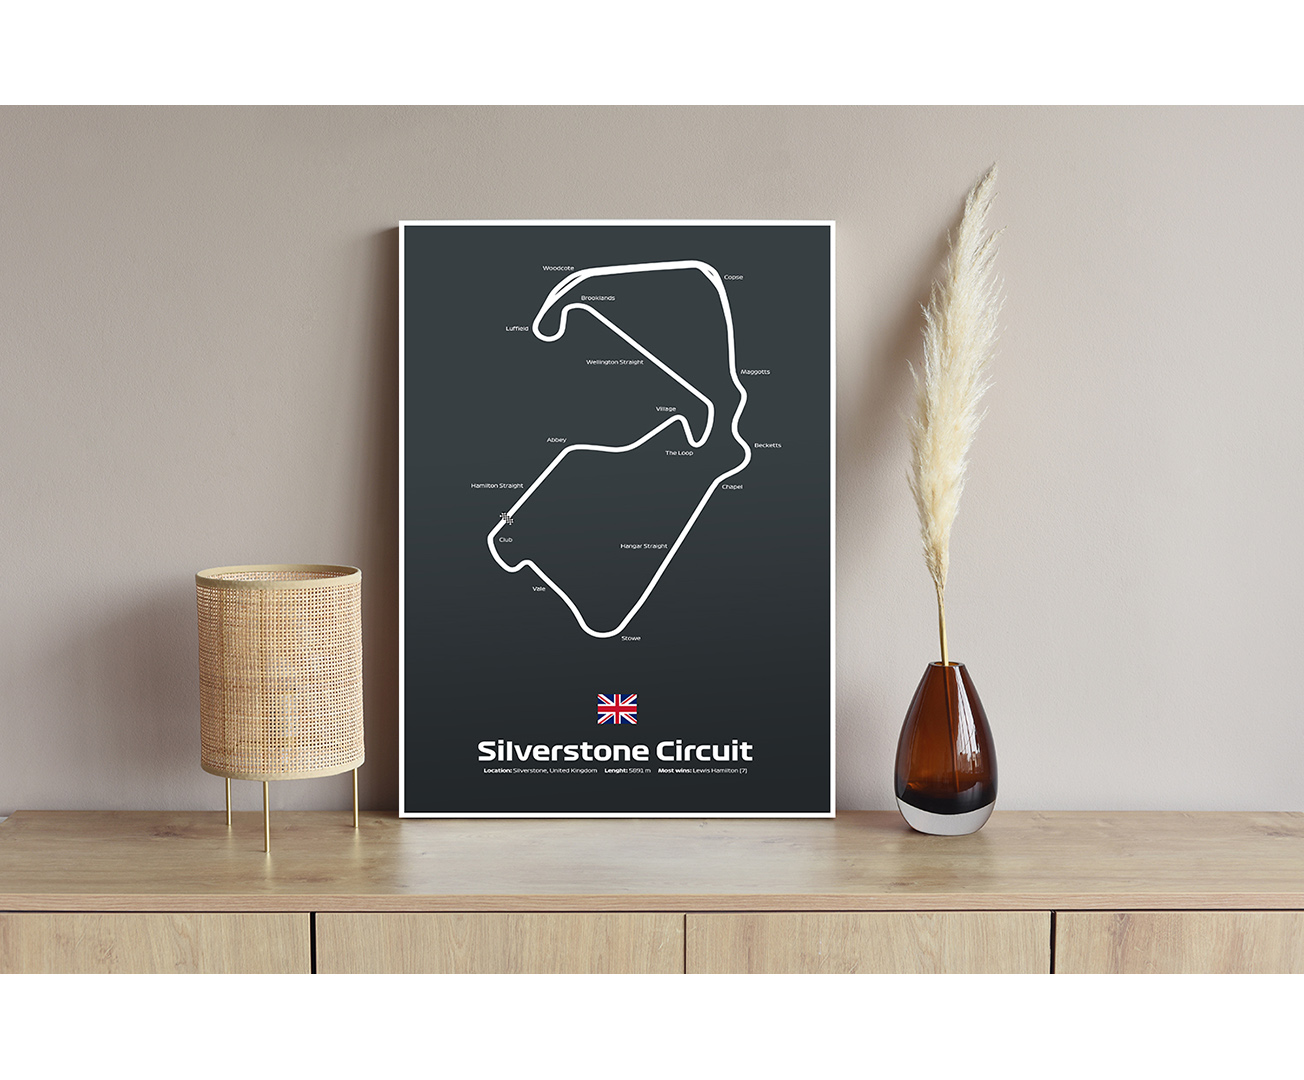 Silverstone Circuit - Okruh F1 vo Veľkej Británii